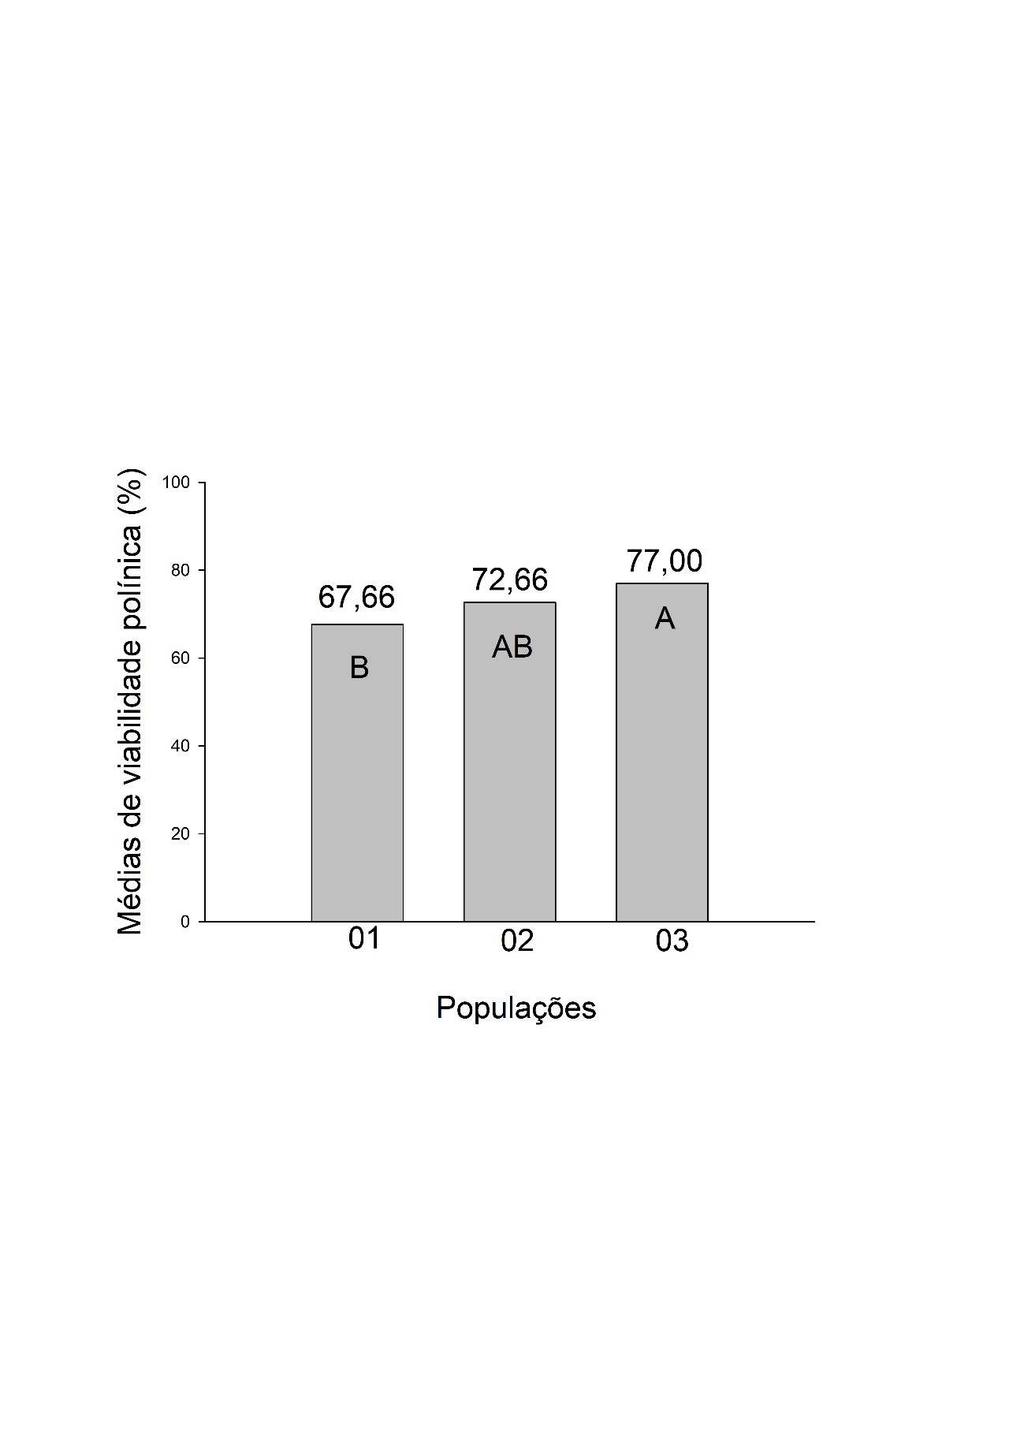 As médias de viabilidade polínica estimada pelo corante lugol 2% mostraram-se altas para as populações 02 com 72,66% e a 03 com 77,00%, já a população 01 apresentou um percentual médio com 67,66% de